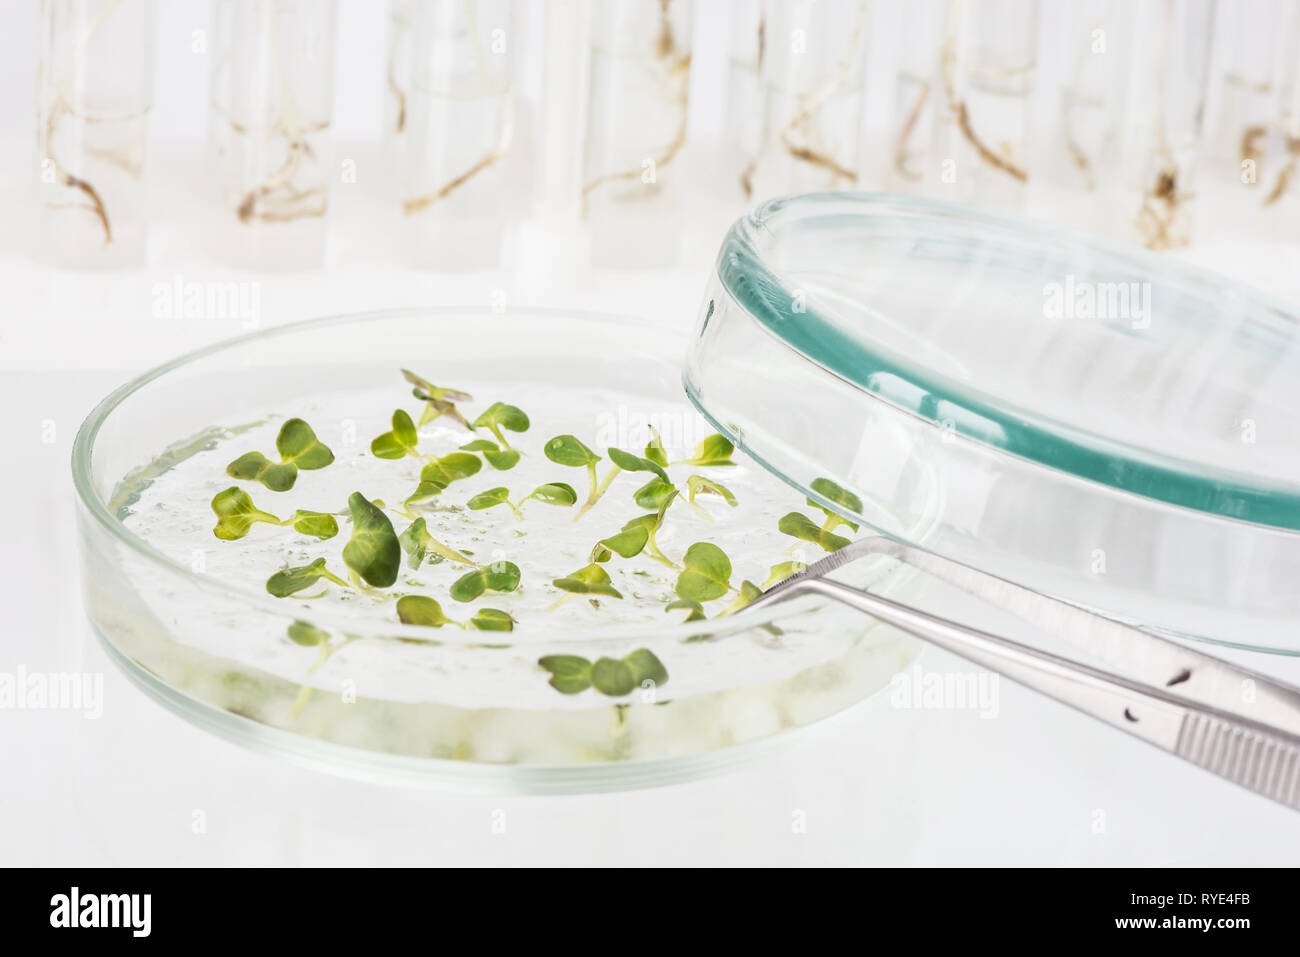 Material biológico de organismos modificados genéticamente en una placa de Petri sobre un fondo de luz closeup Foto de stock